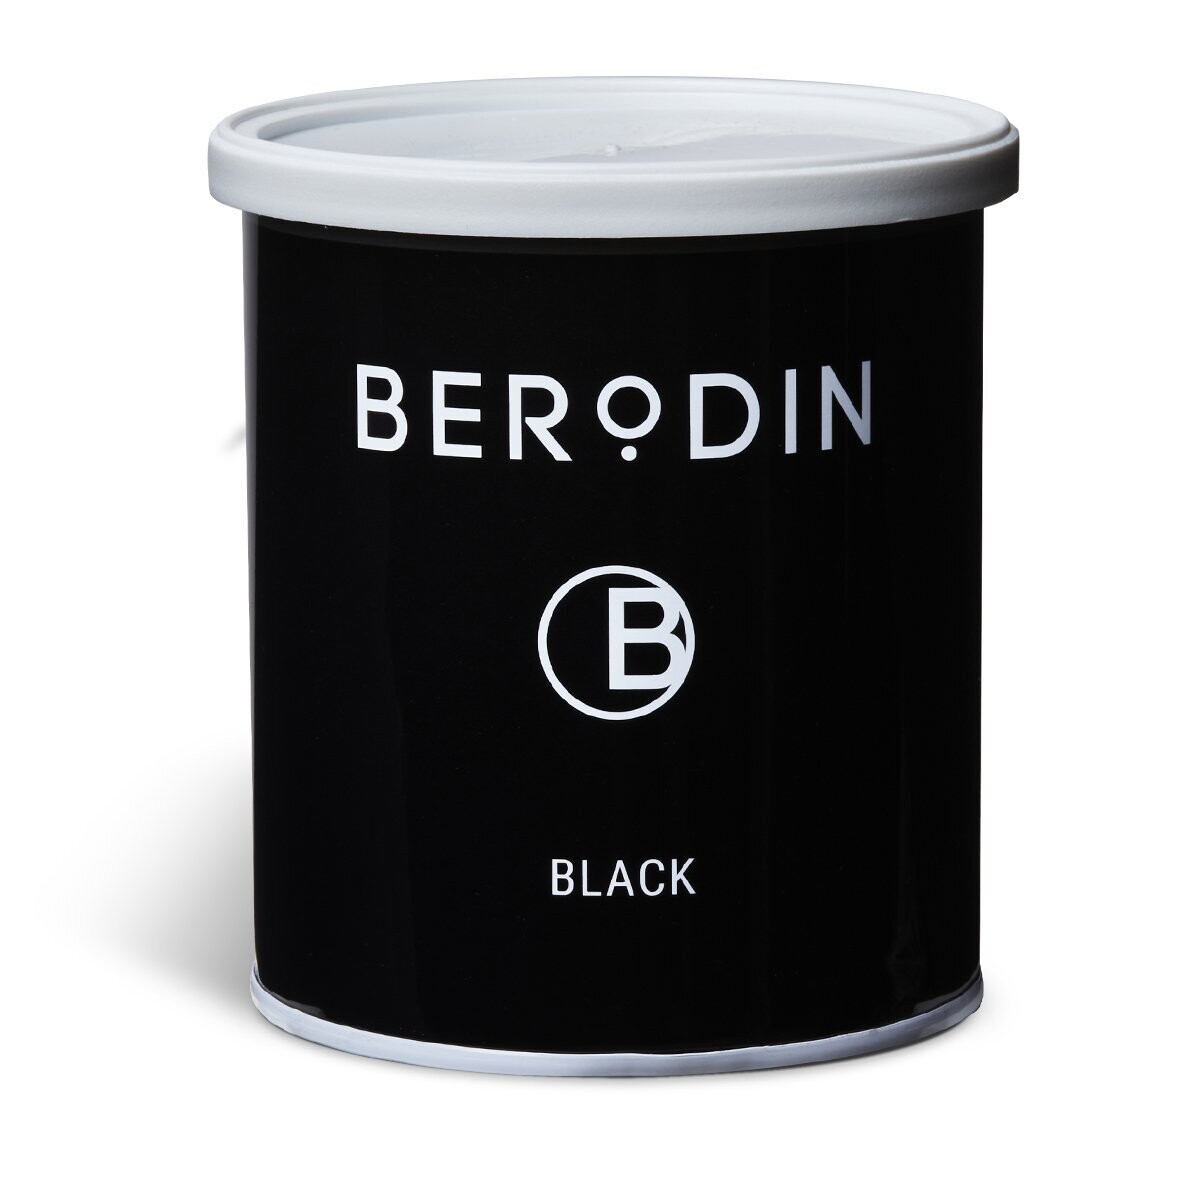 Berodin Black Tin 800g Wax